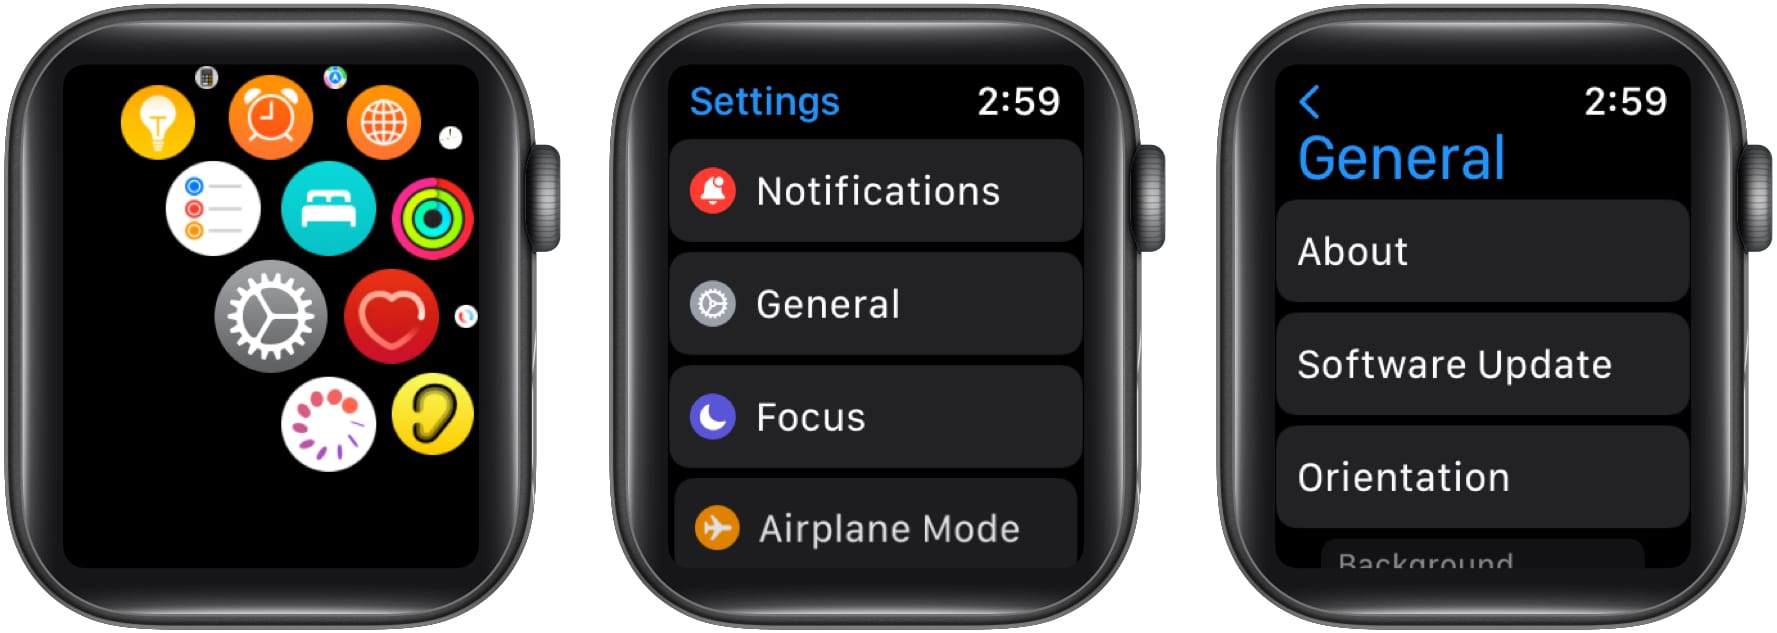 Elija Actualización de software desde la configuración general de Apple Watch